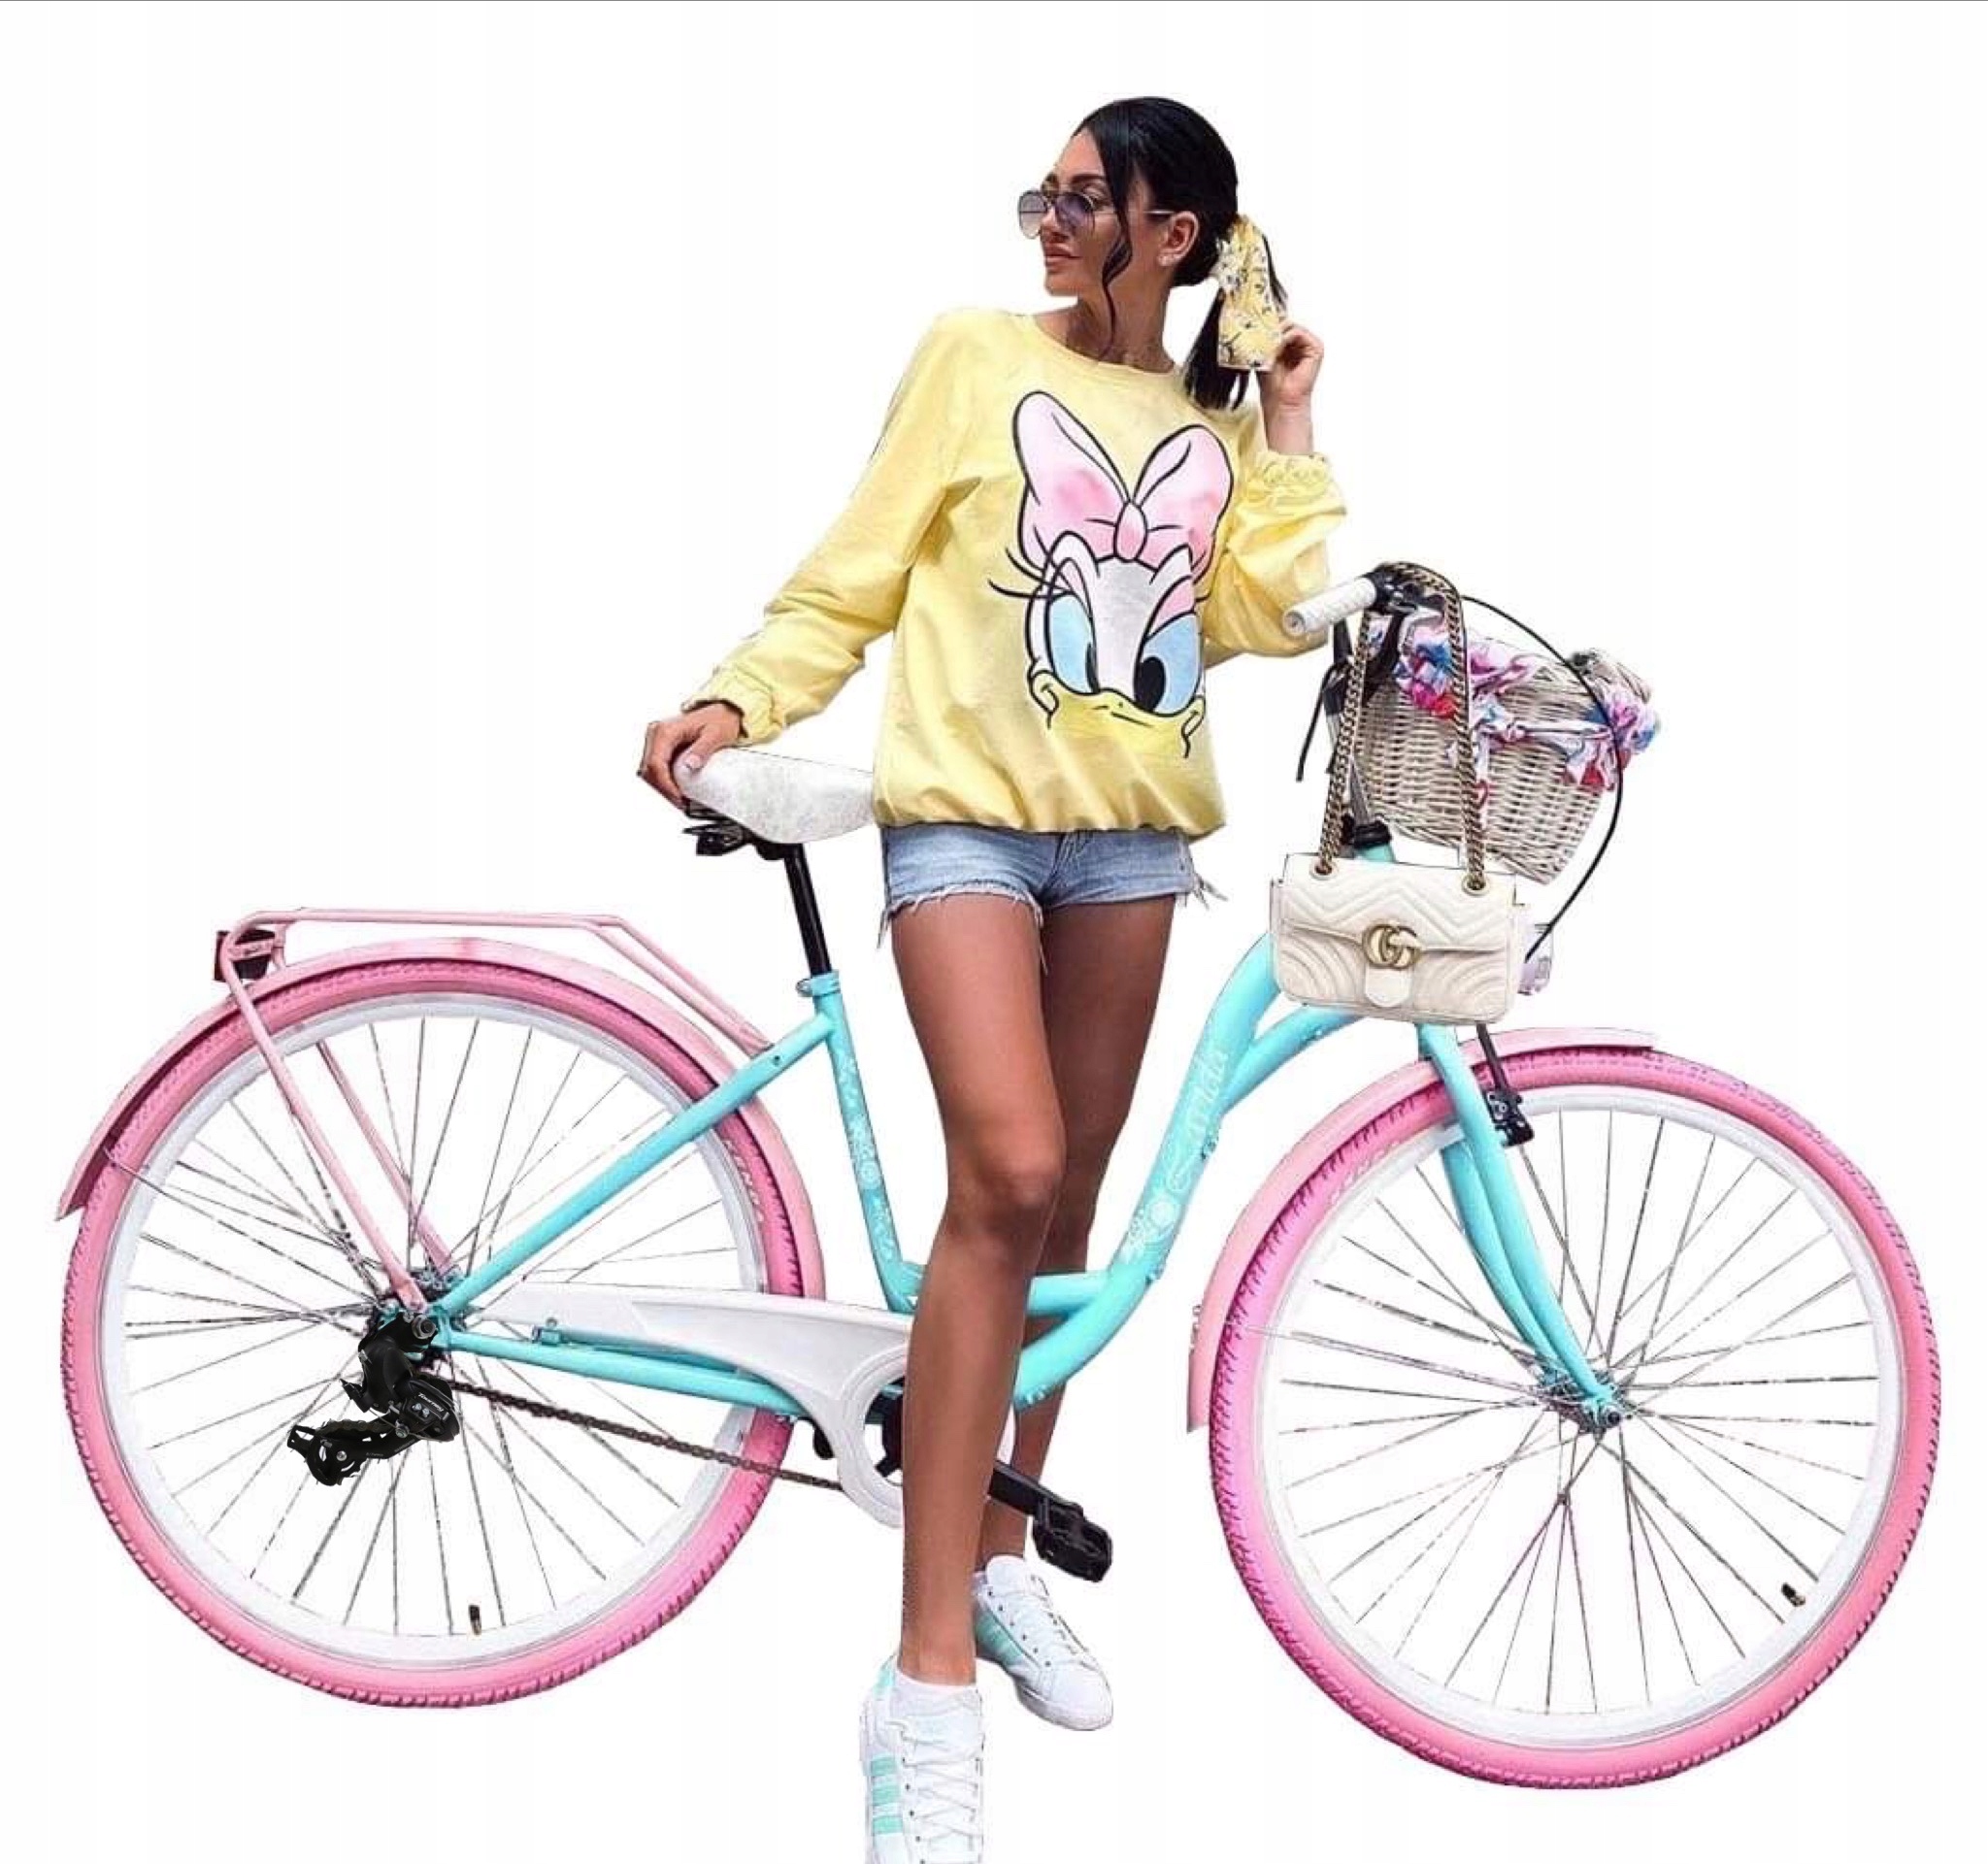 Купить жене велосипед. Велосипед женский. Велосипед спортивный женский. Красивый женский велосипед. Стильный женский велосипед.